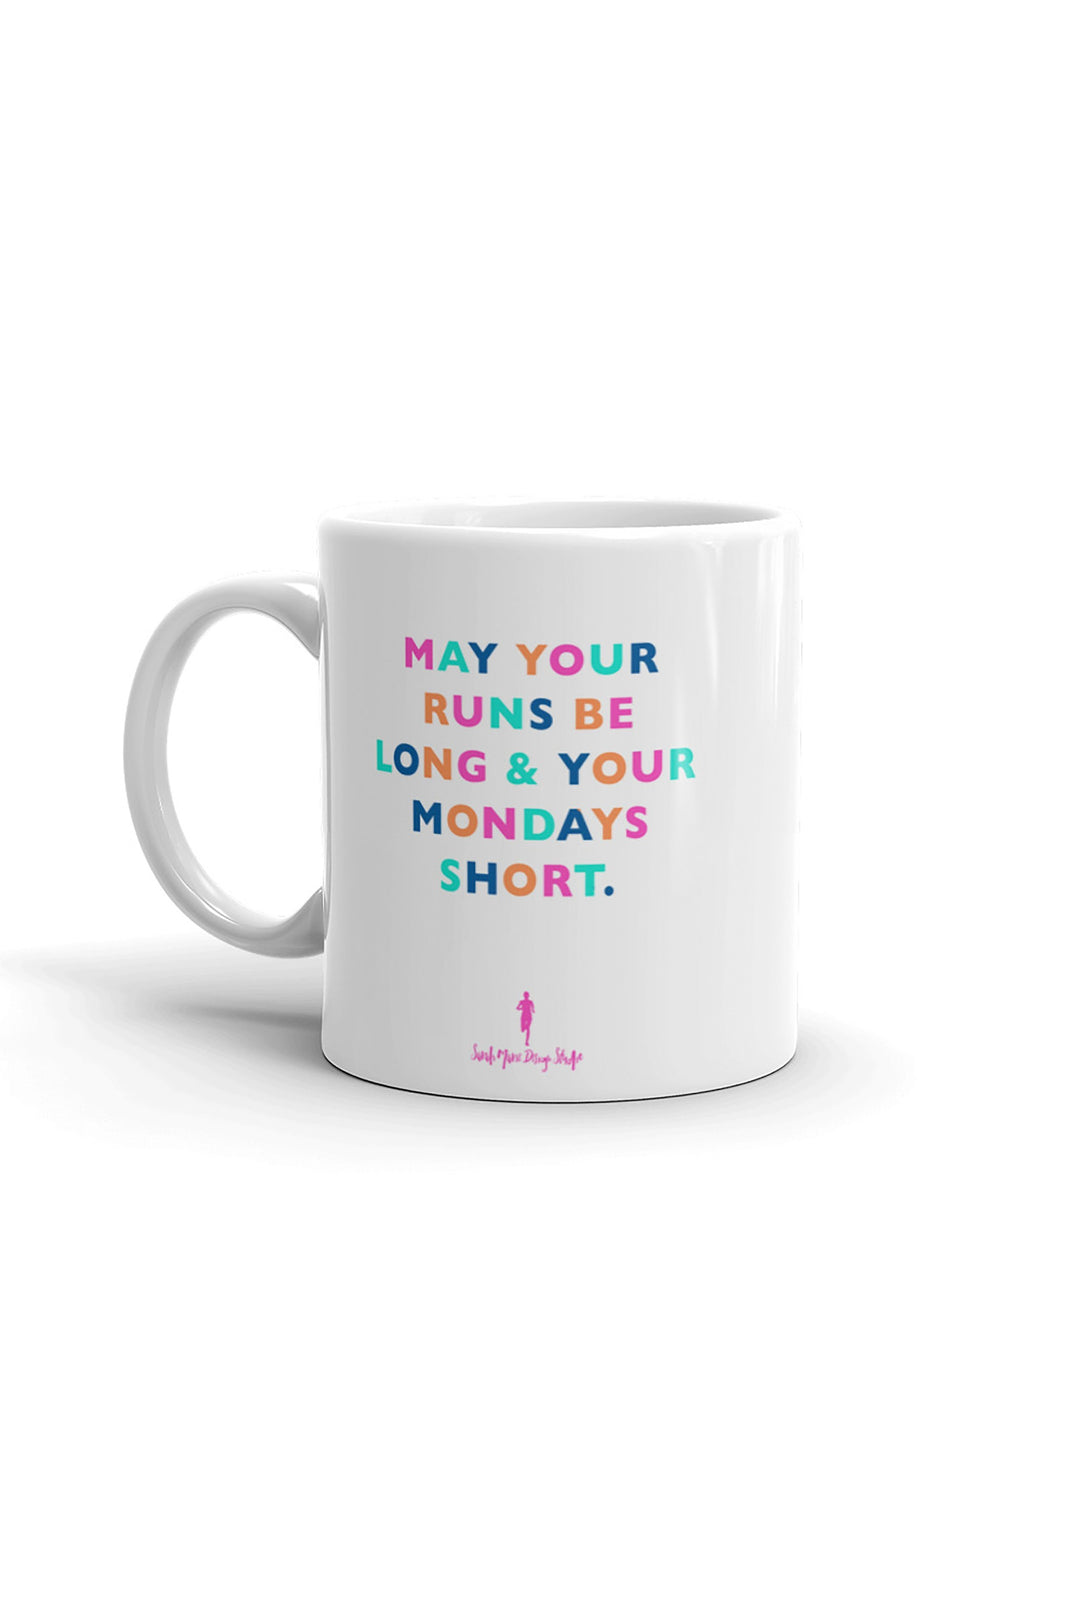 May your runs be long and your Mondays Short Mug - Sarah Marie Design Studio